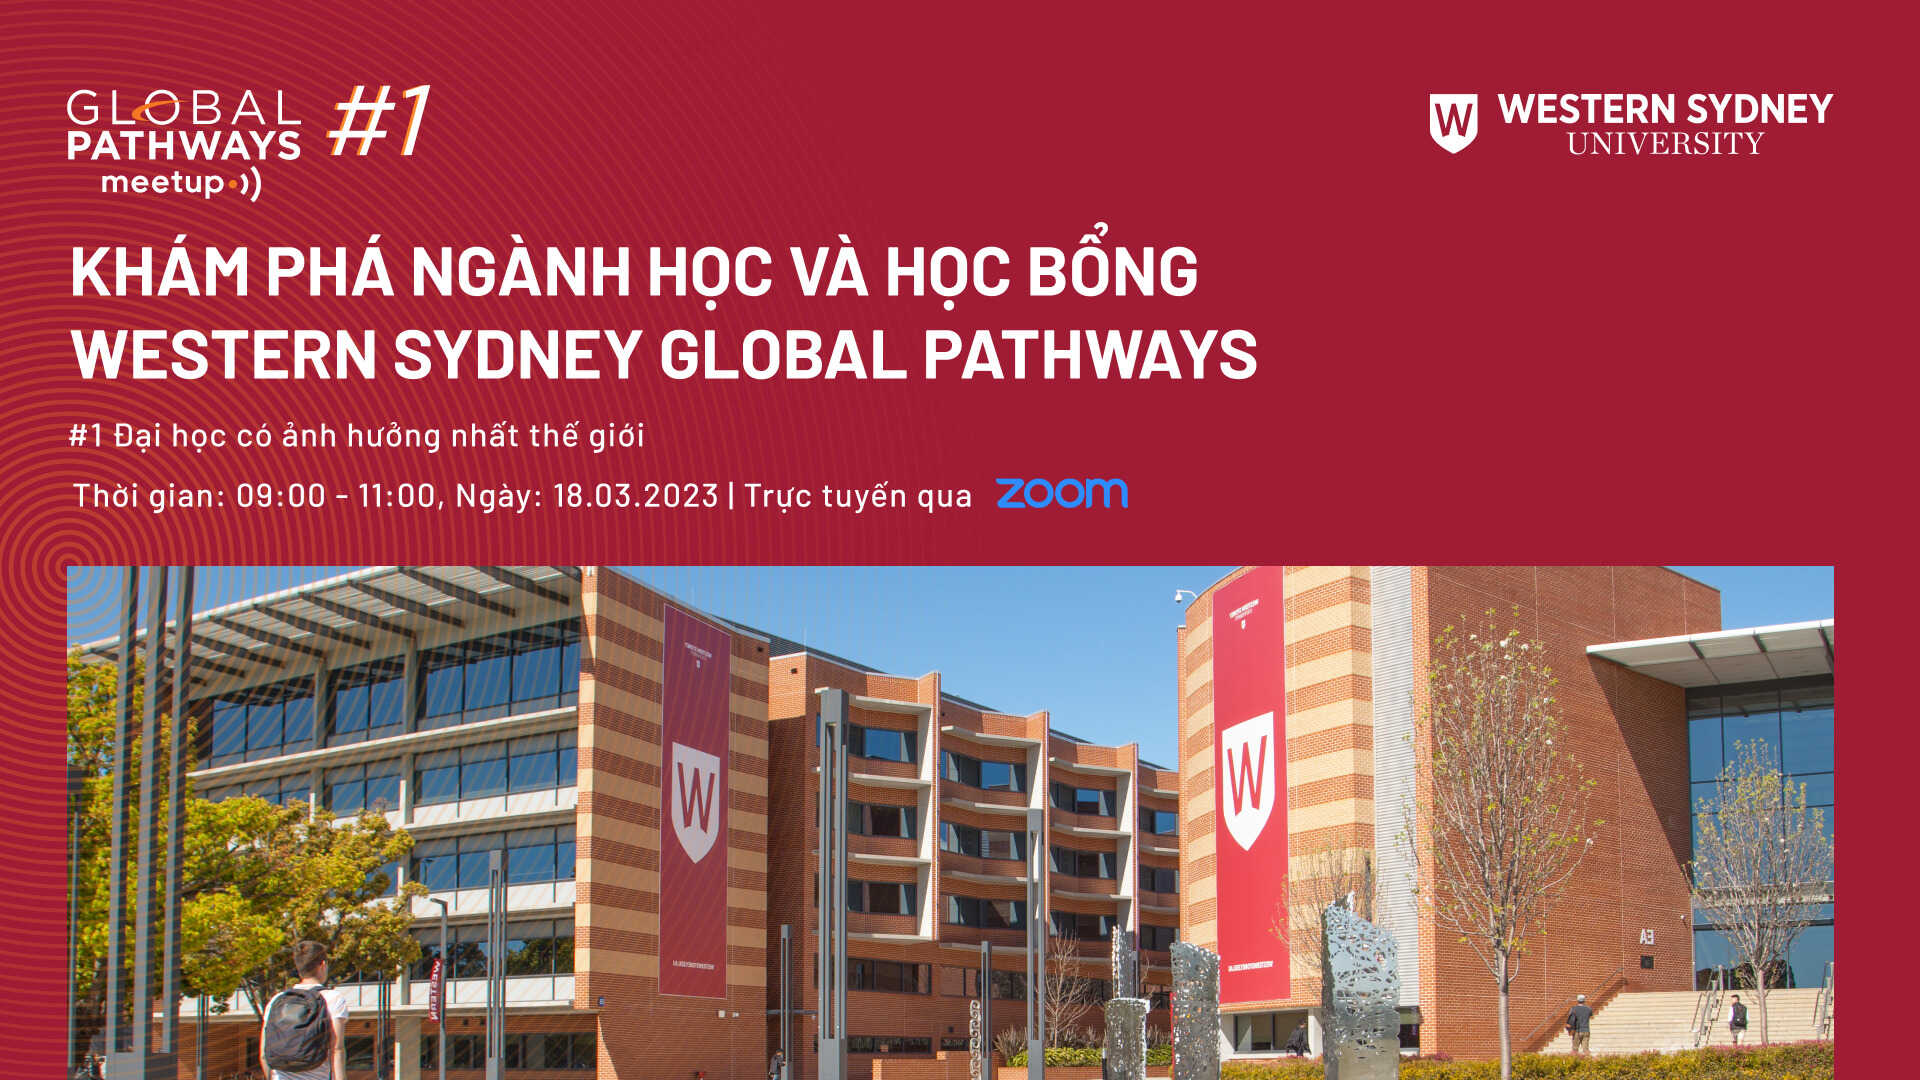 Sự kiện Western Sydney Global Pathways - Global Pathways Meetup #1